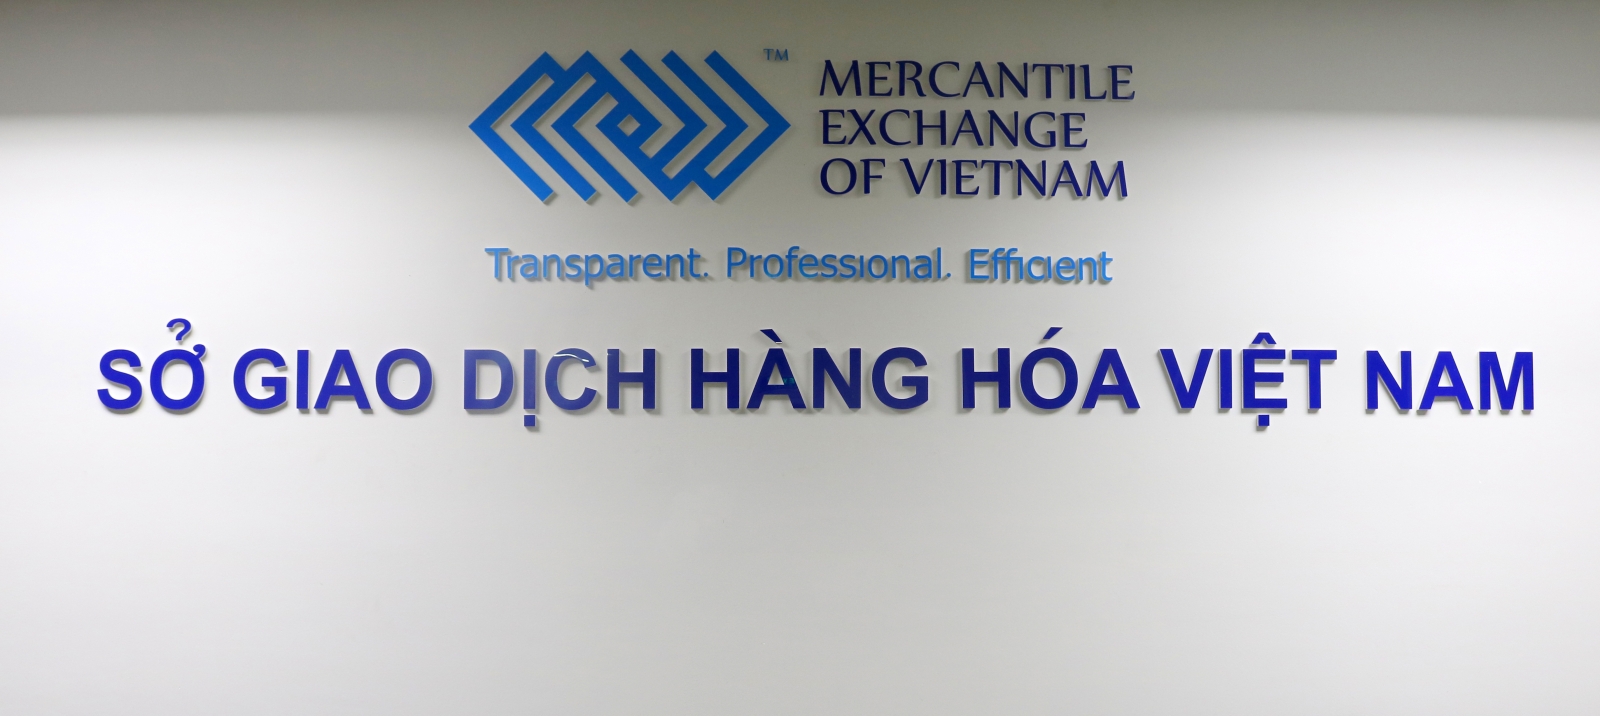 Công ty Cổ phần Finhay Việt Nam là thành viên Môi giới mới của Sở Giao dịch Hàng hóa Việt Nam